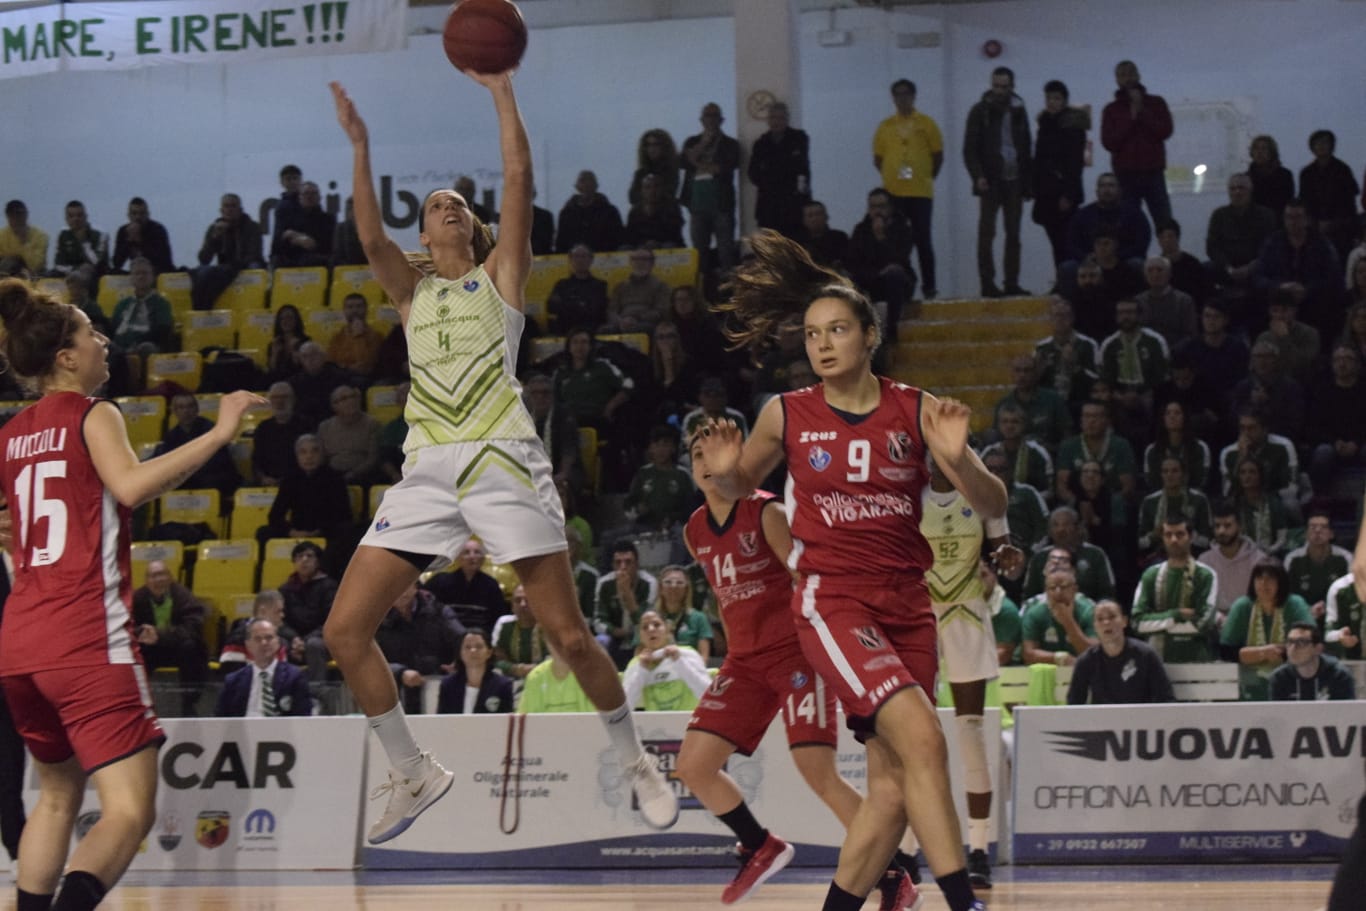 Basket donne, Ragusa gioca male e rimedia la prima sconfitta stagionale